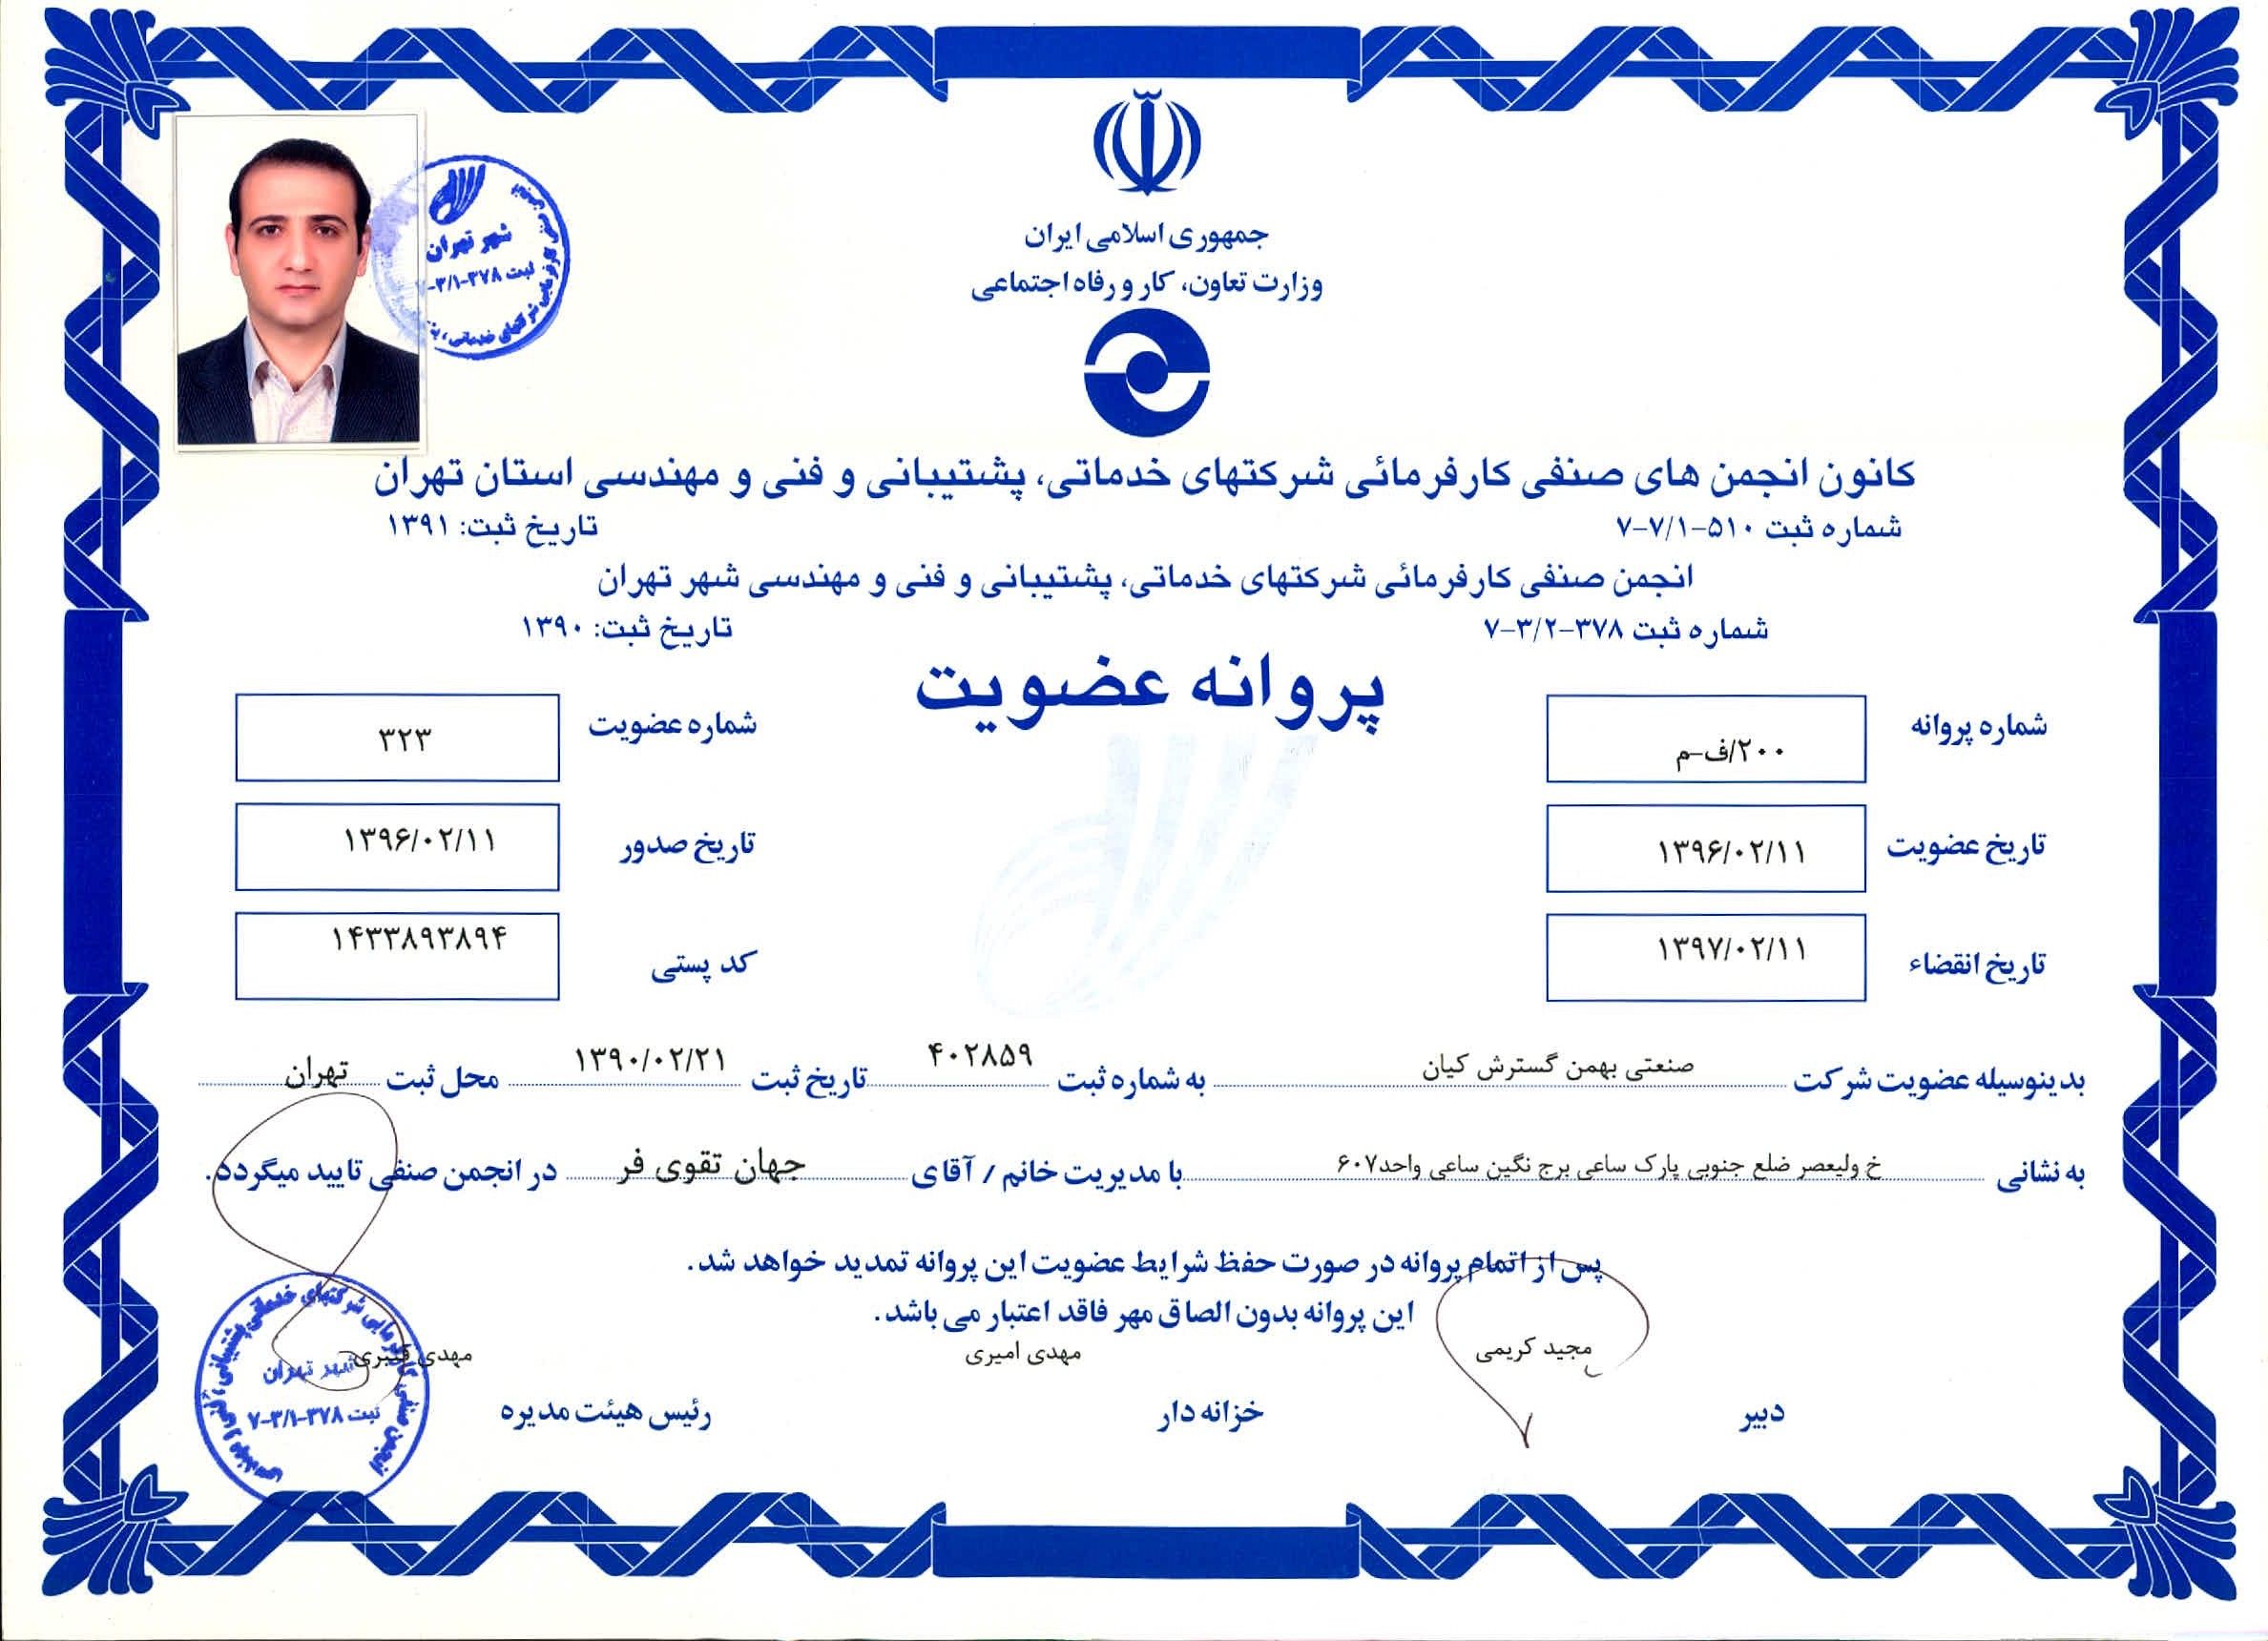 عضویت در کانون انجمن های صنفی کارفرمائی شرکت های خدماتی، پشتیبانی و فنی و مهندسی استان تهران